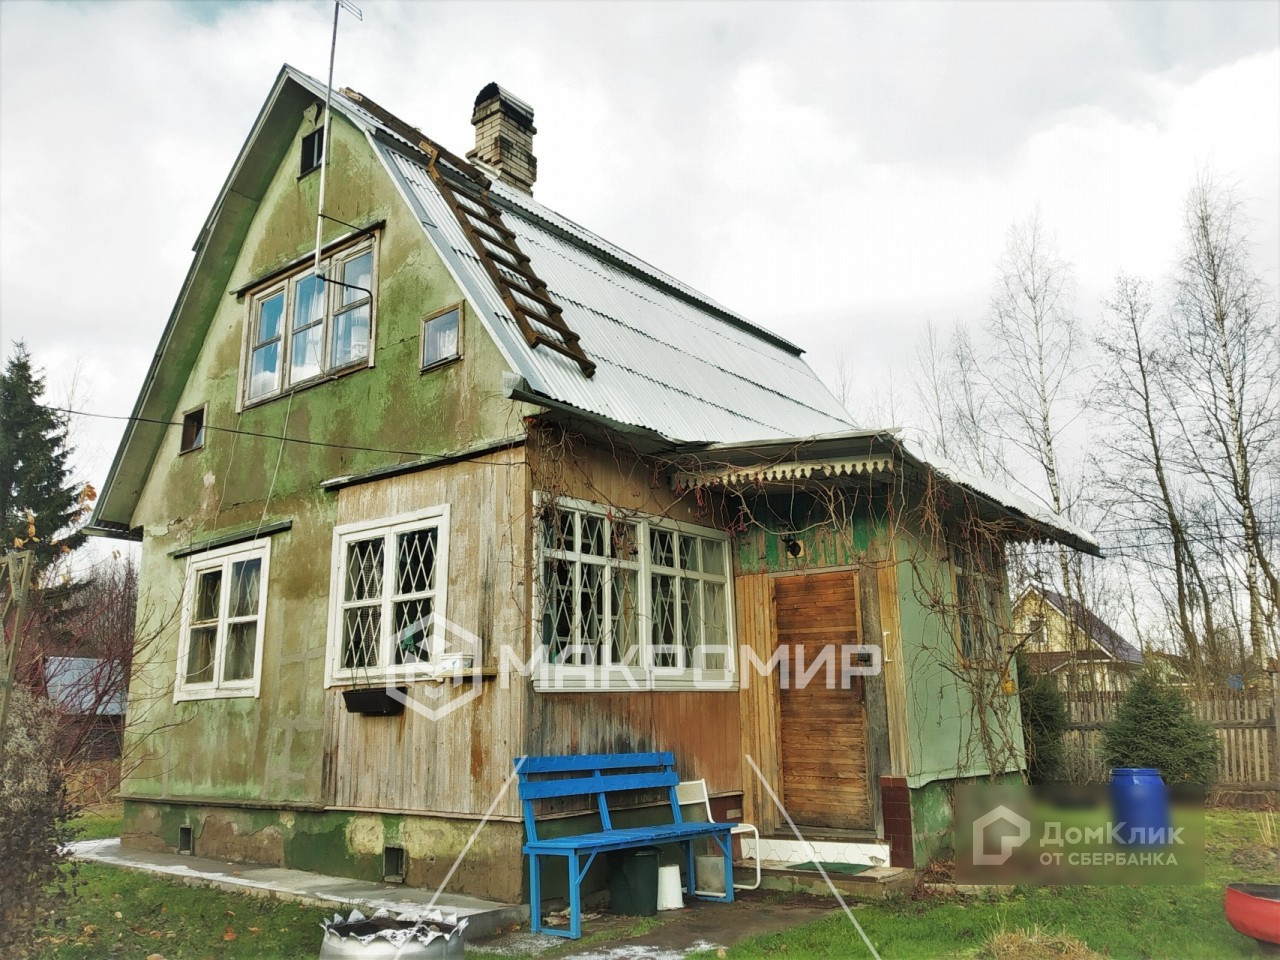 Продажа домов в беково пензенской области на авито ру с фото